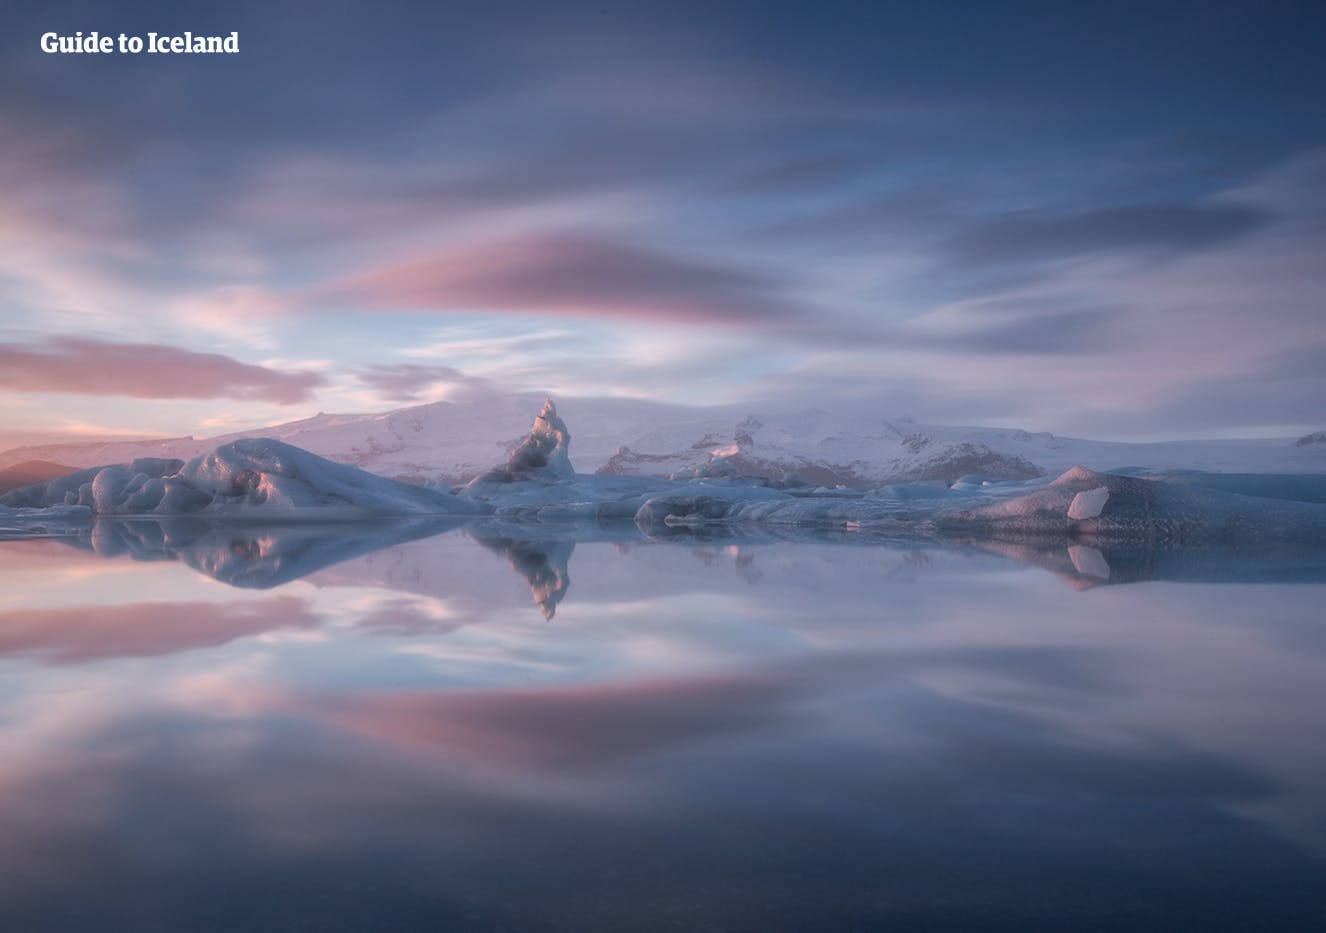 Die Gletscherlagune Jökulsarlon ist im Winter genauso schön wie im Sommer.